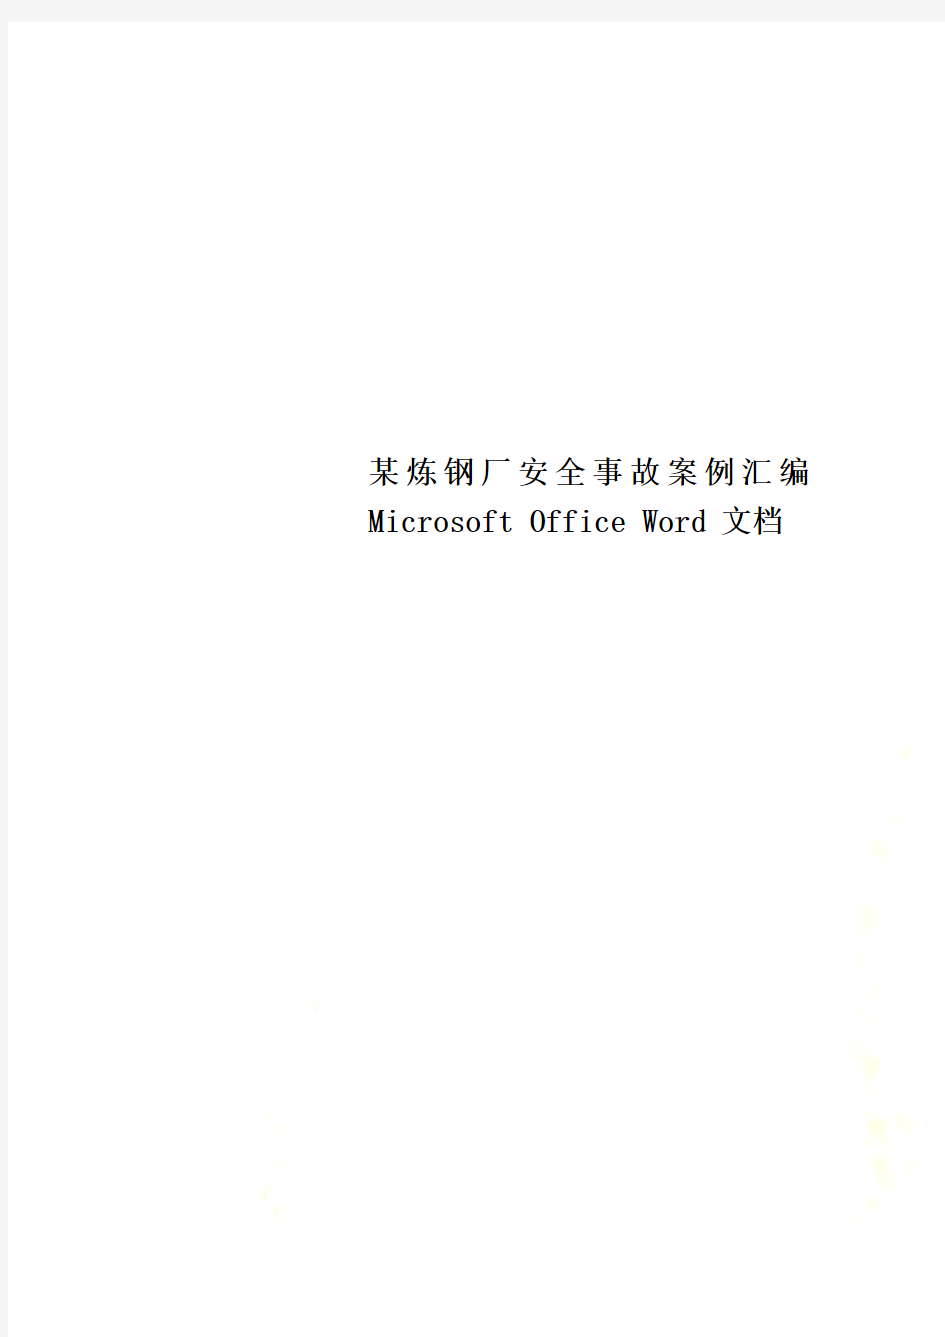 某炼钢厂安全事故案例汇编Microsoft Office Word 文档